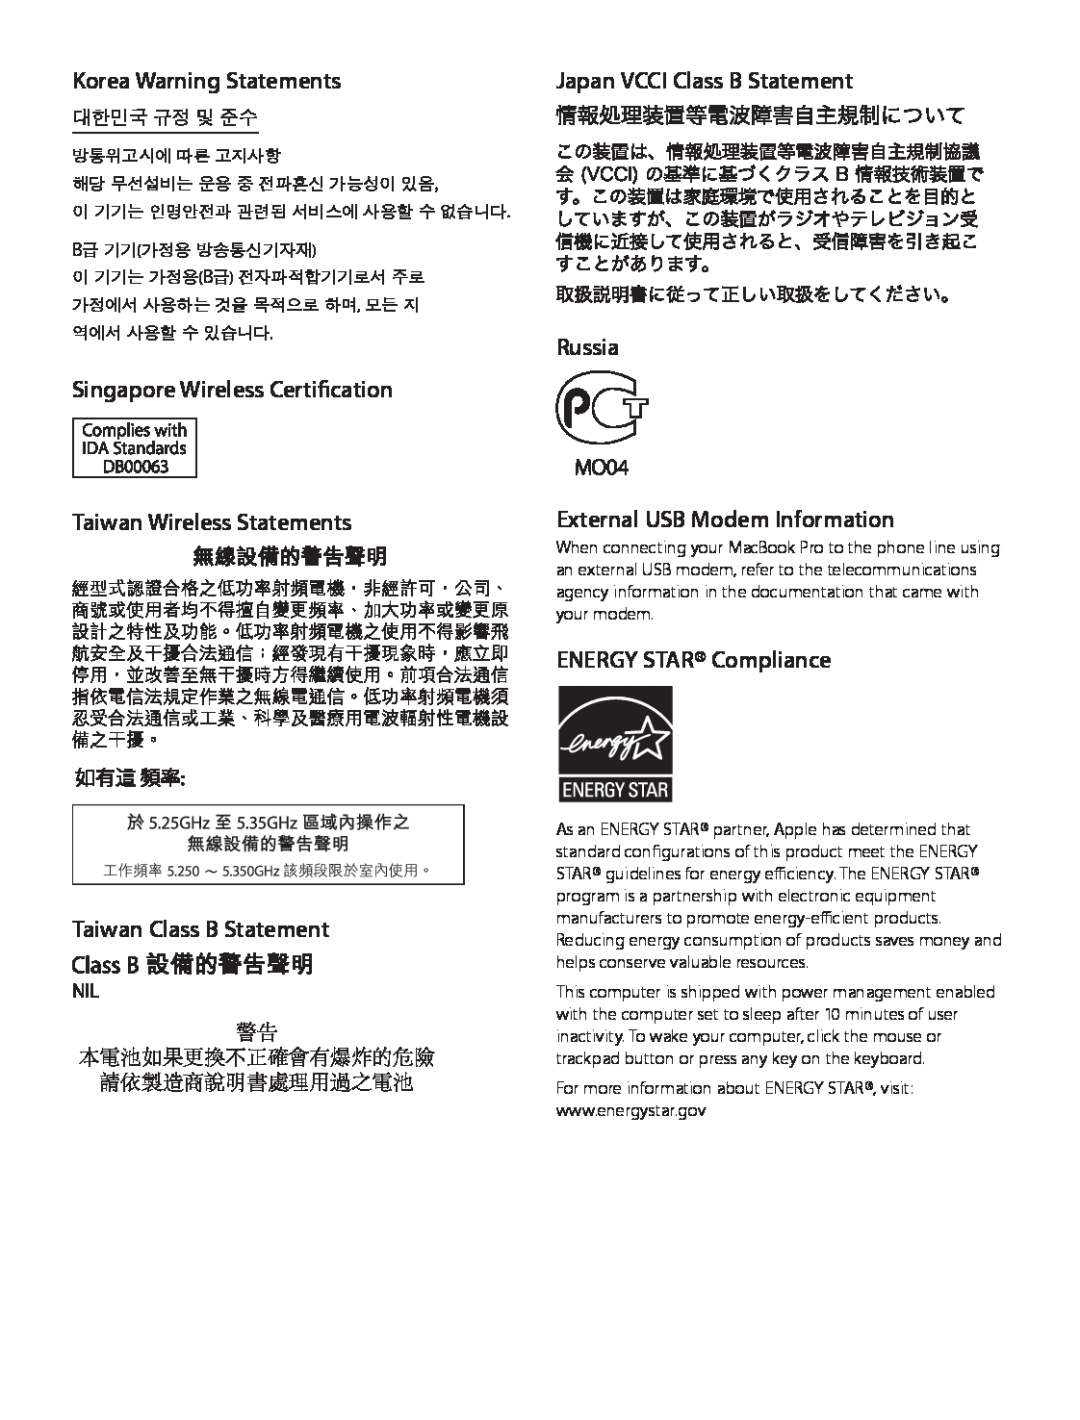 Apple MD212LL/A, MD101LL/A Japan VCCI Class B Statement, Russia, External USB Modem Information, Taiwan Class B Statement 